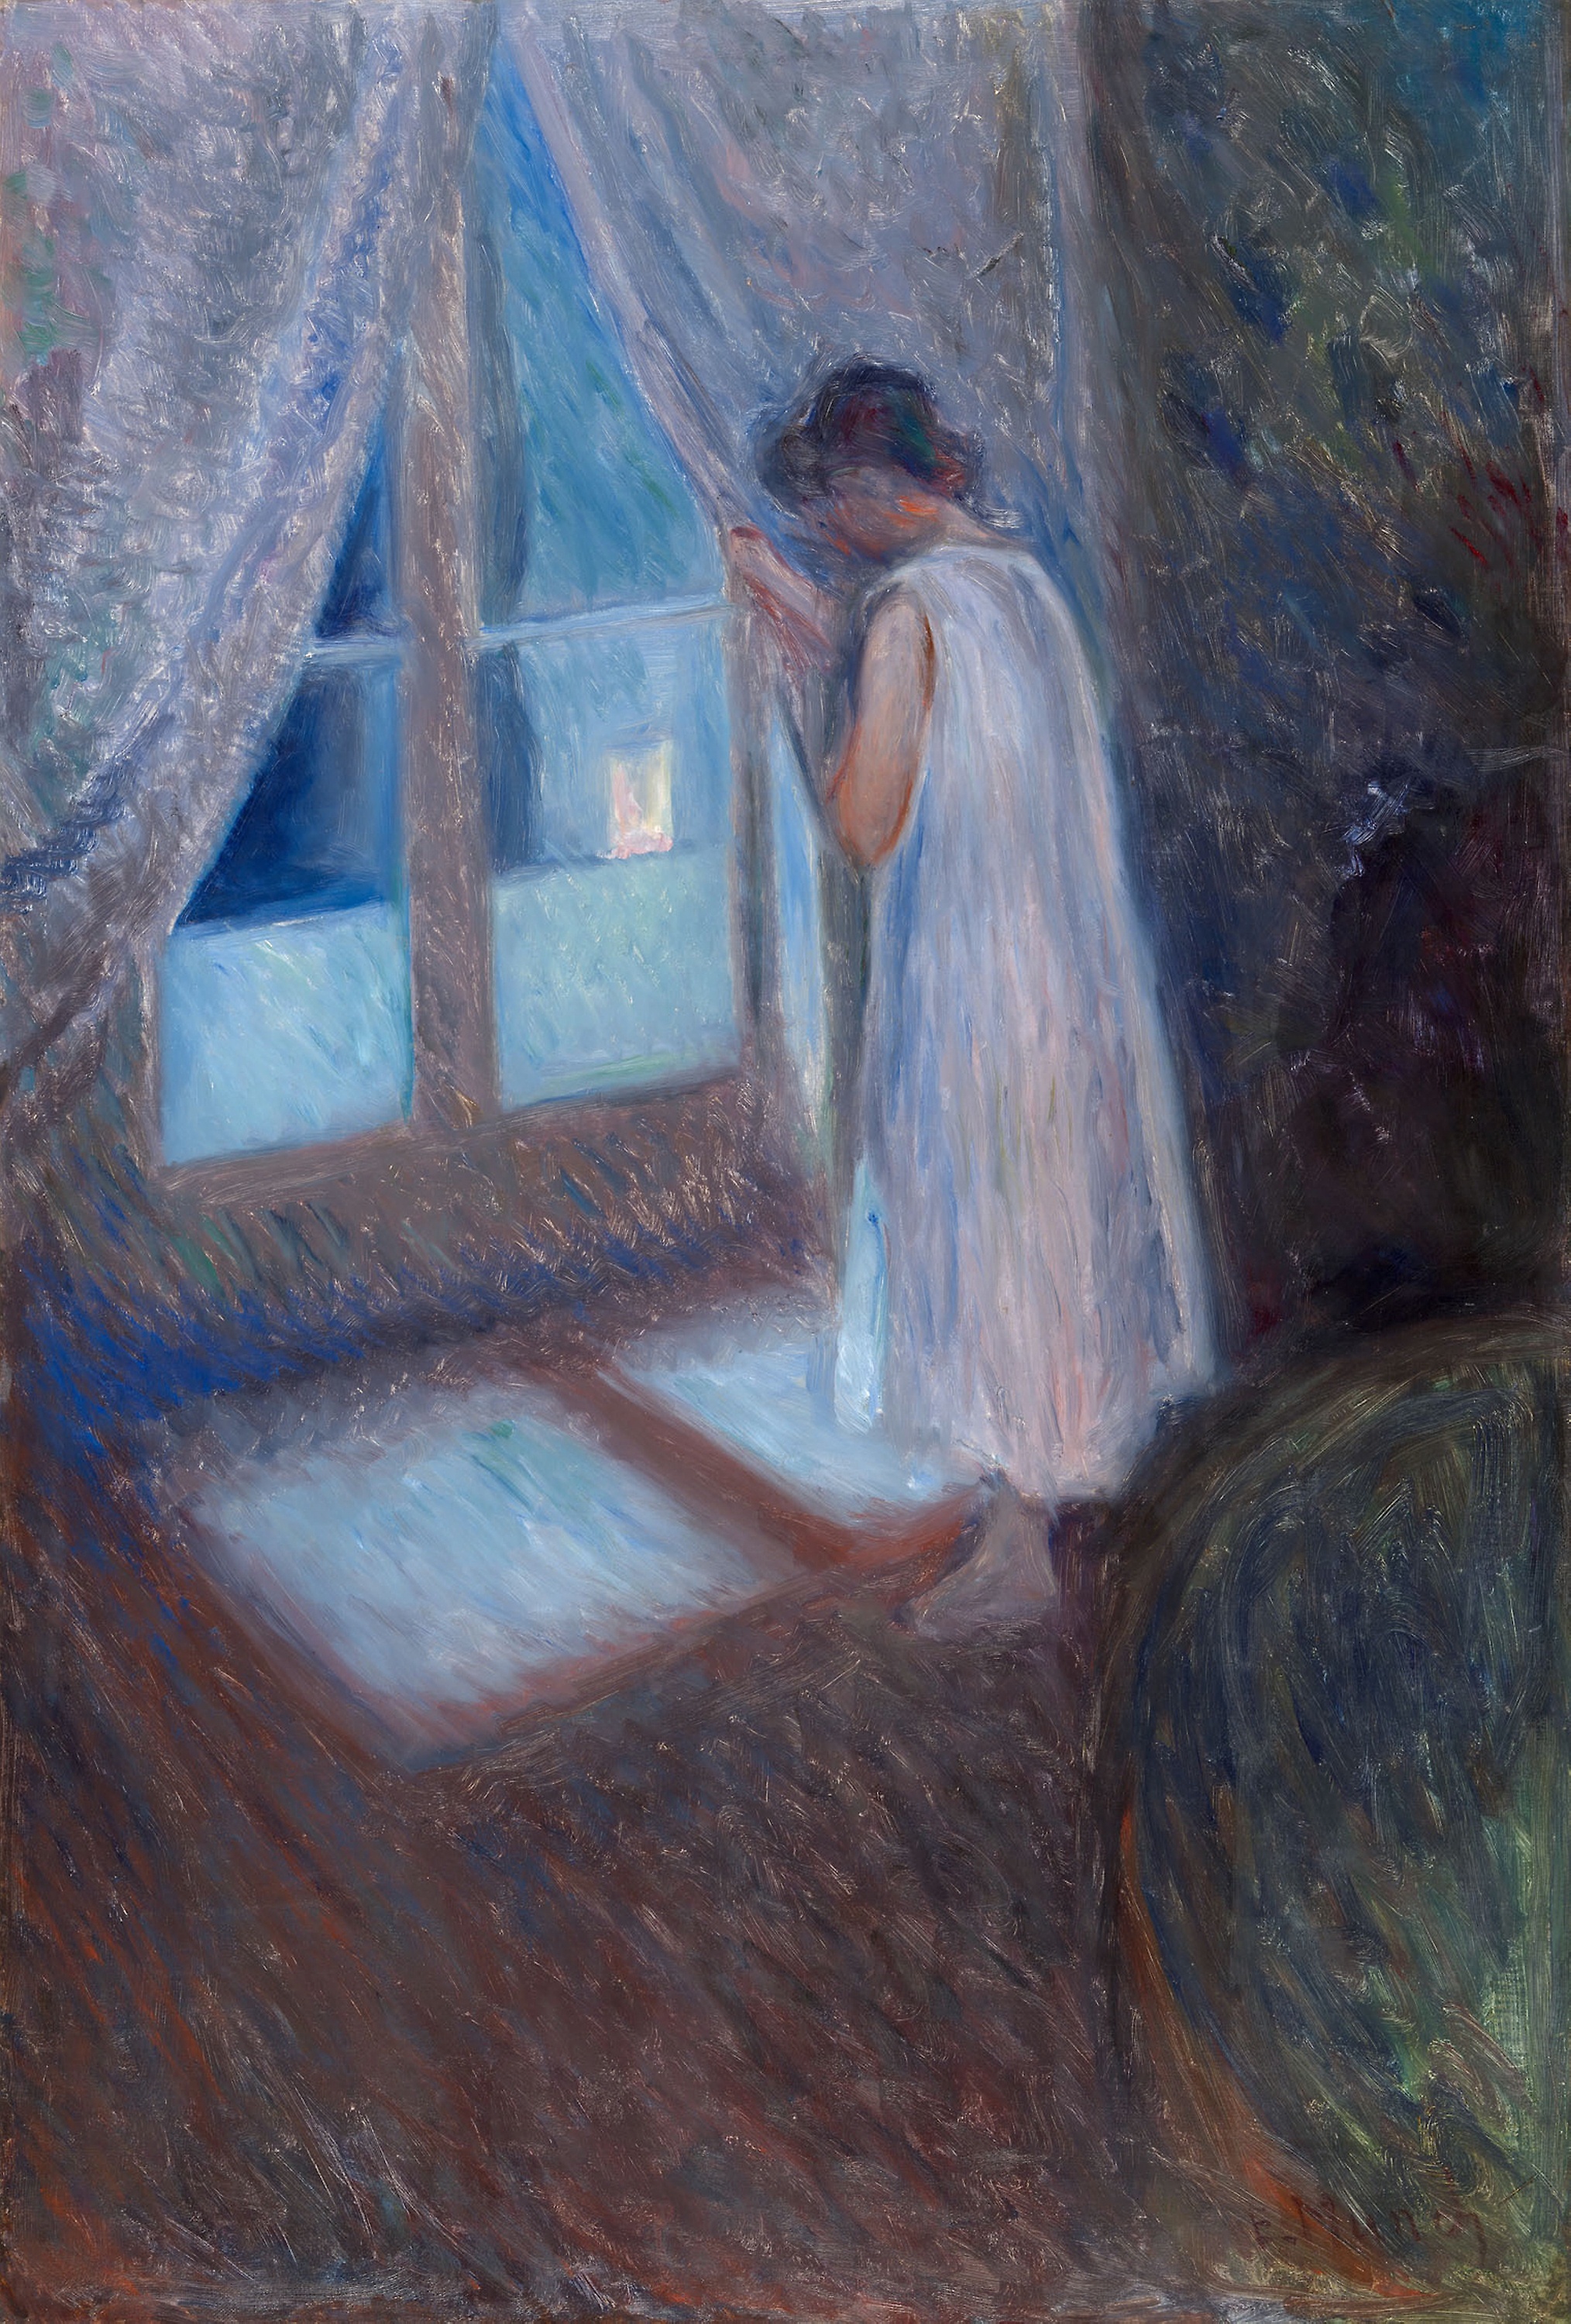 La Fille à la Fenêtre by Edvard Munch - 1893 - 96.5 × 65.4 cm Art Institute of Chicago